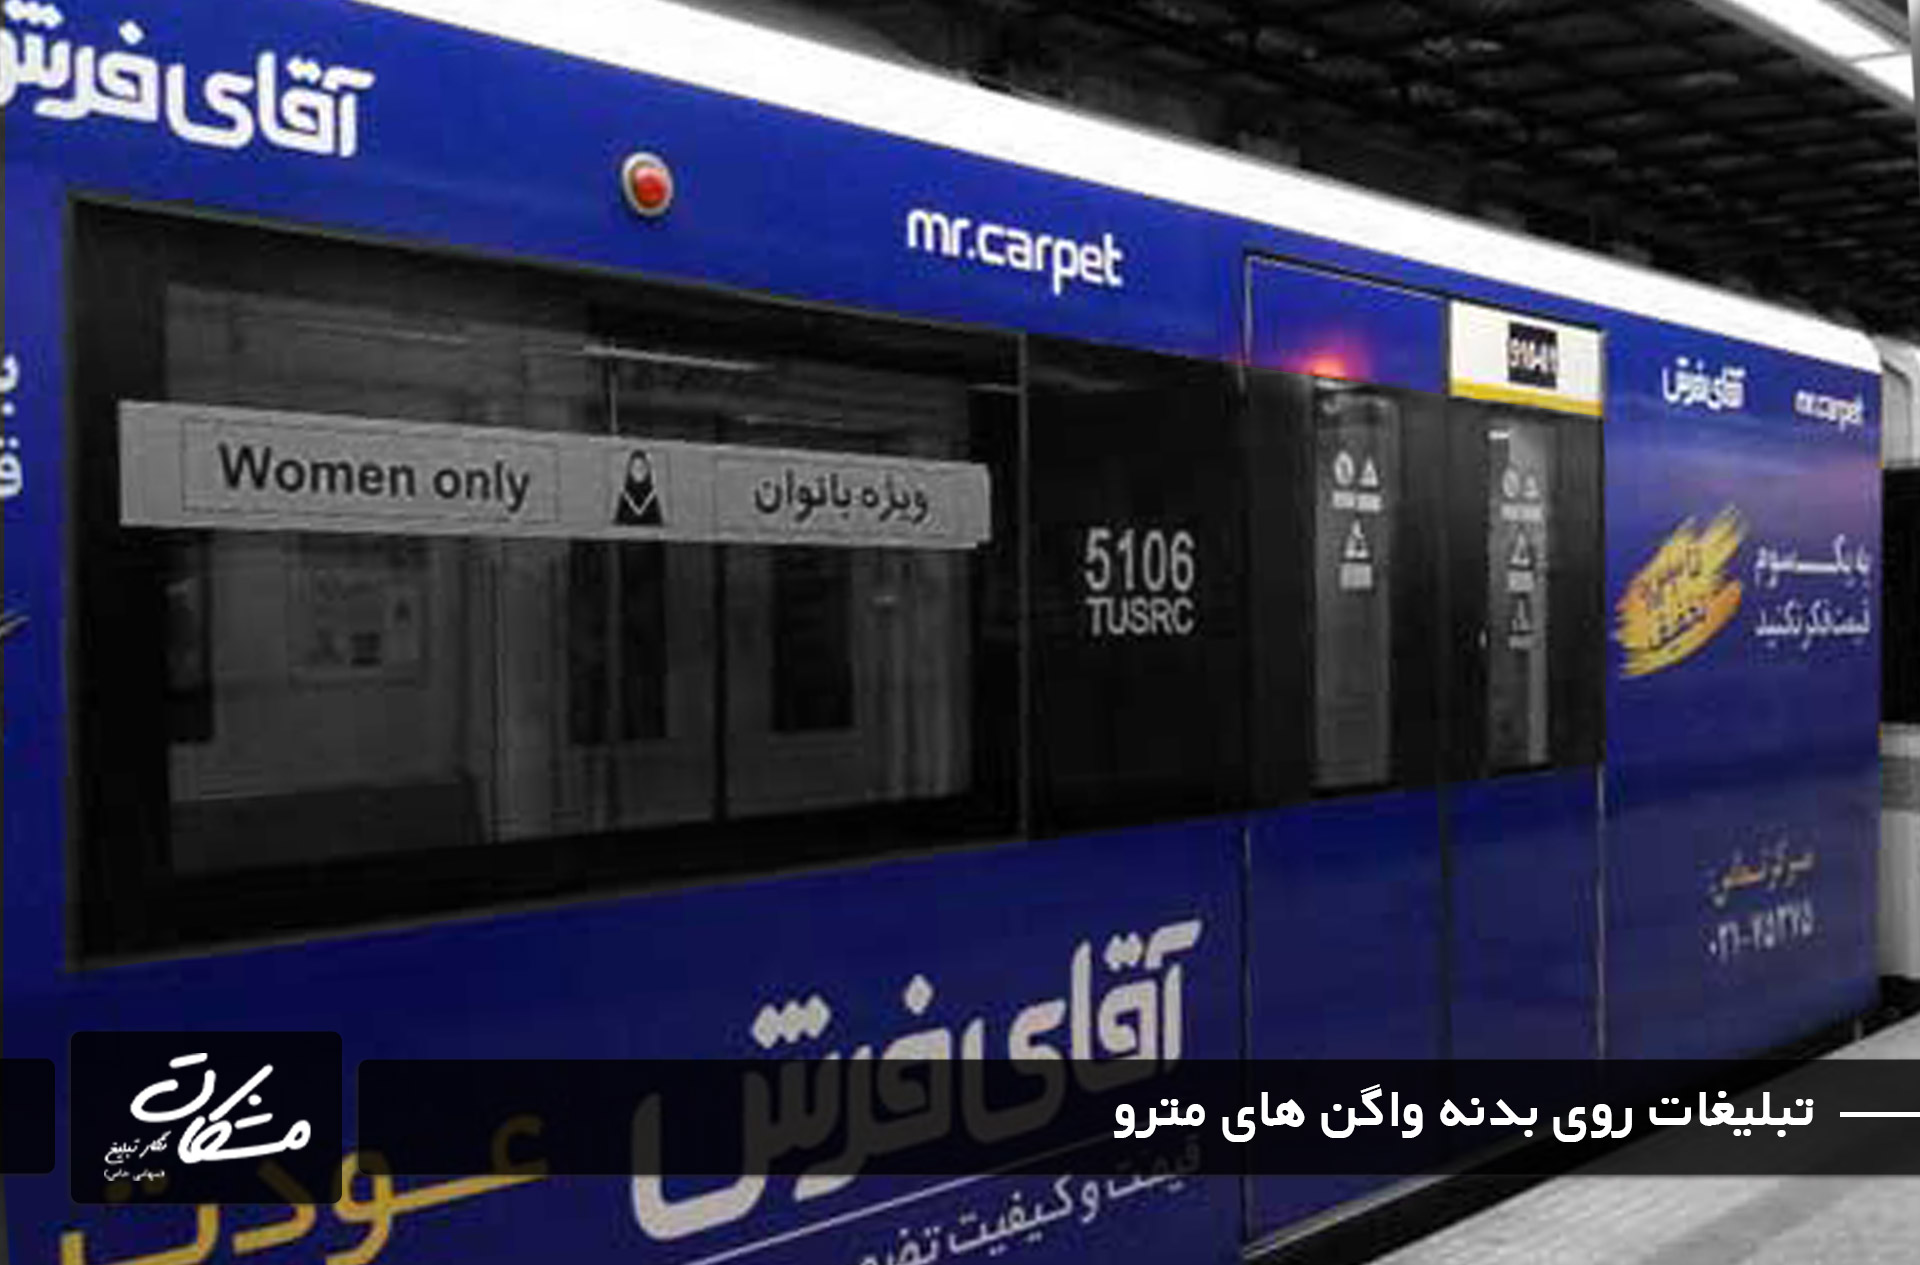 تبلیغات محیطی متحرک بر روی واگن های مترو